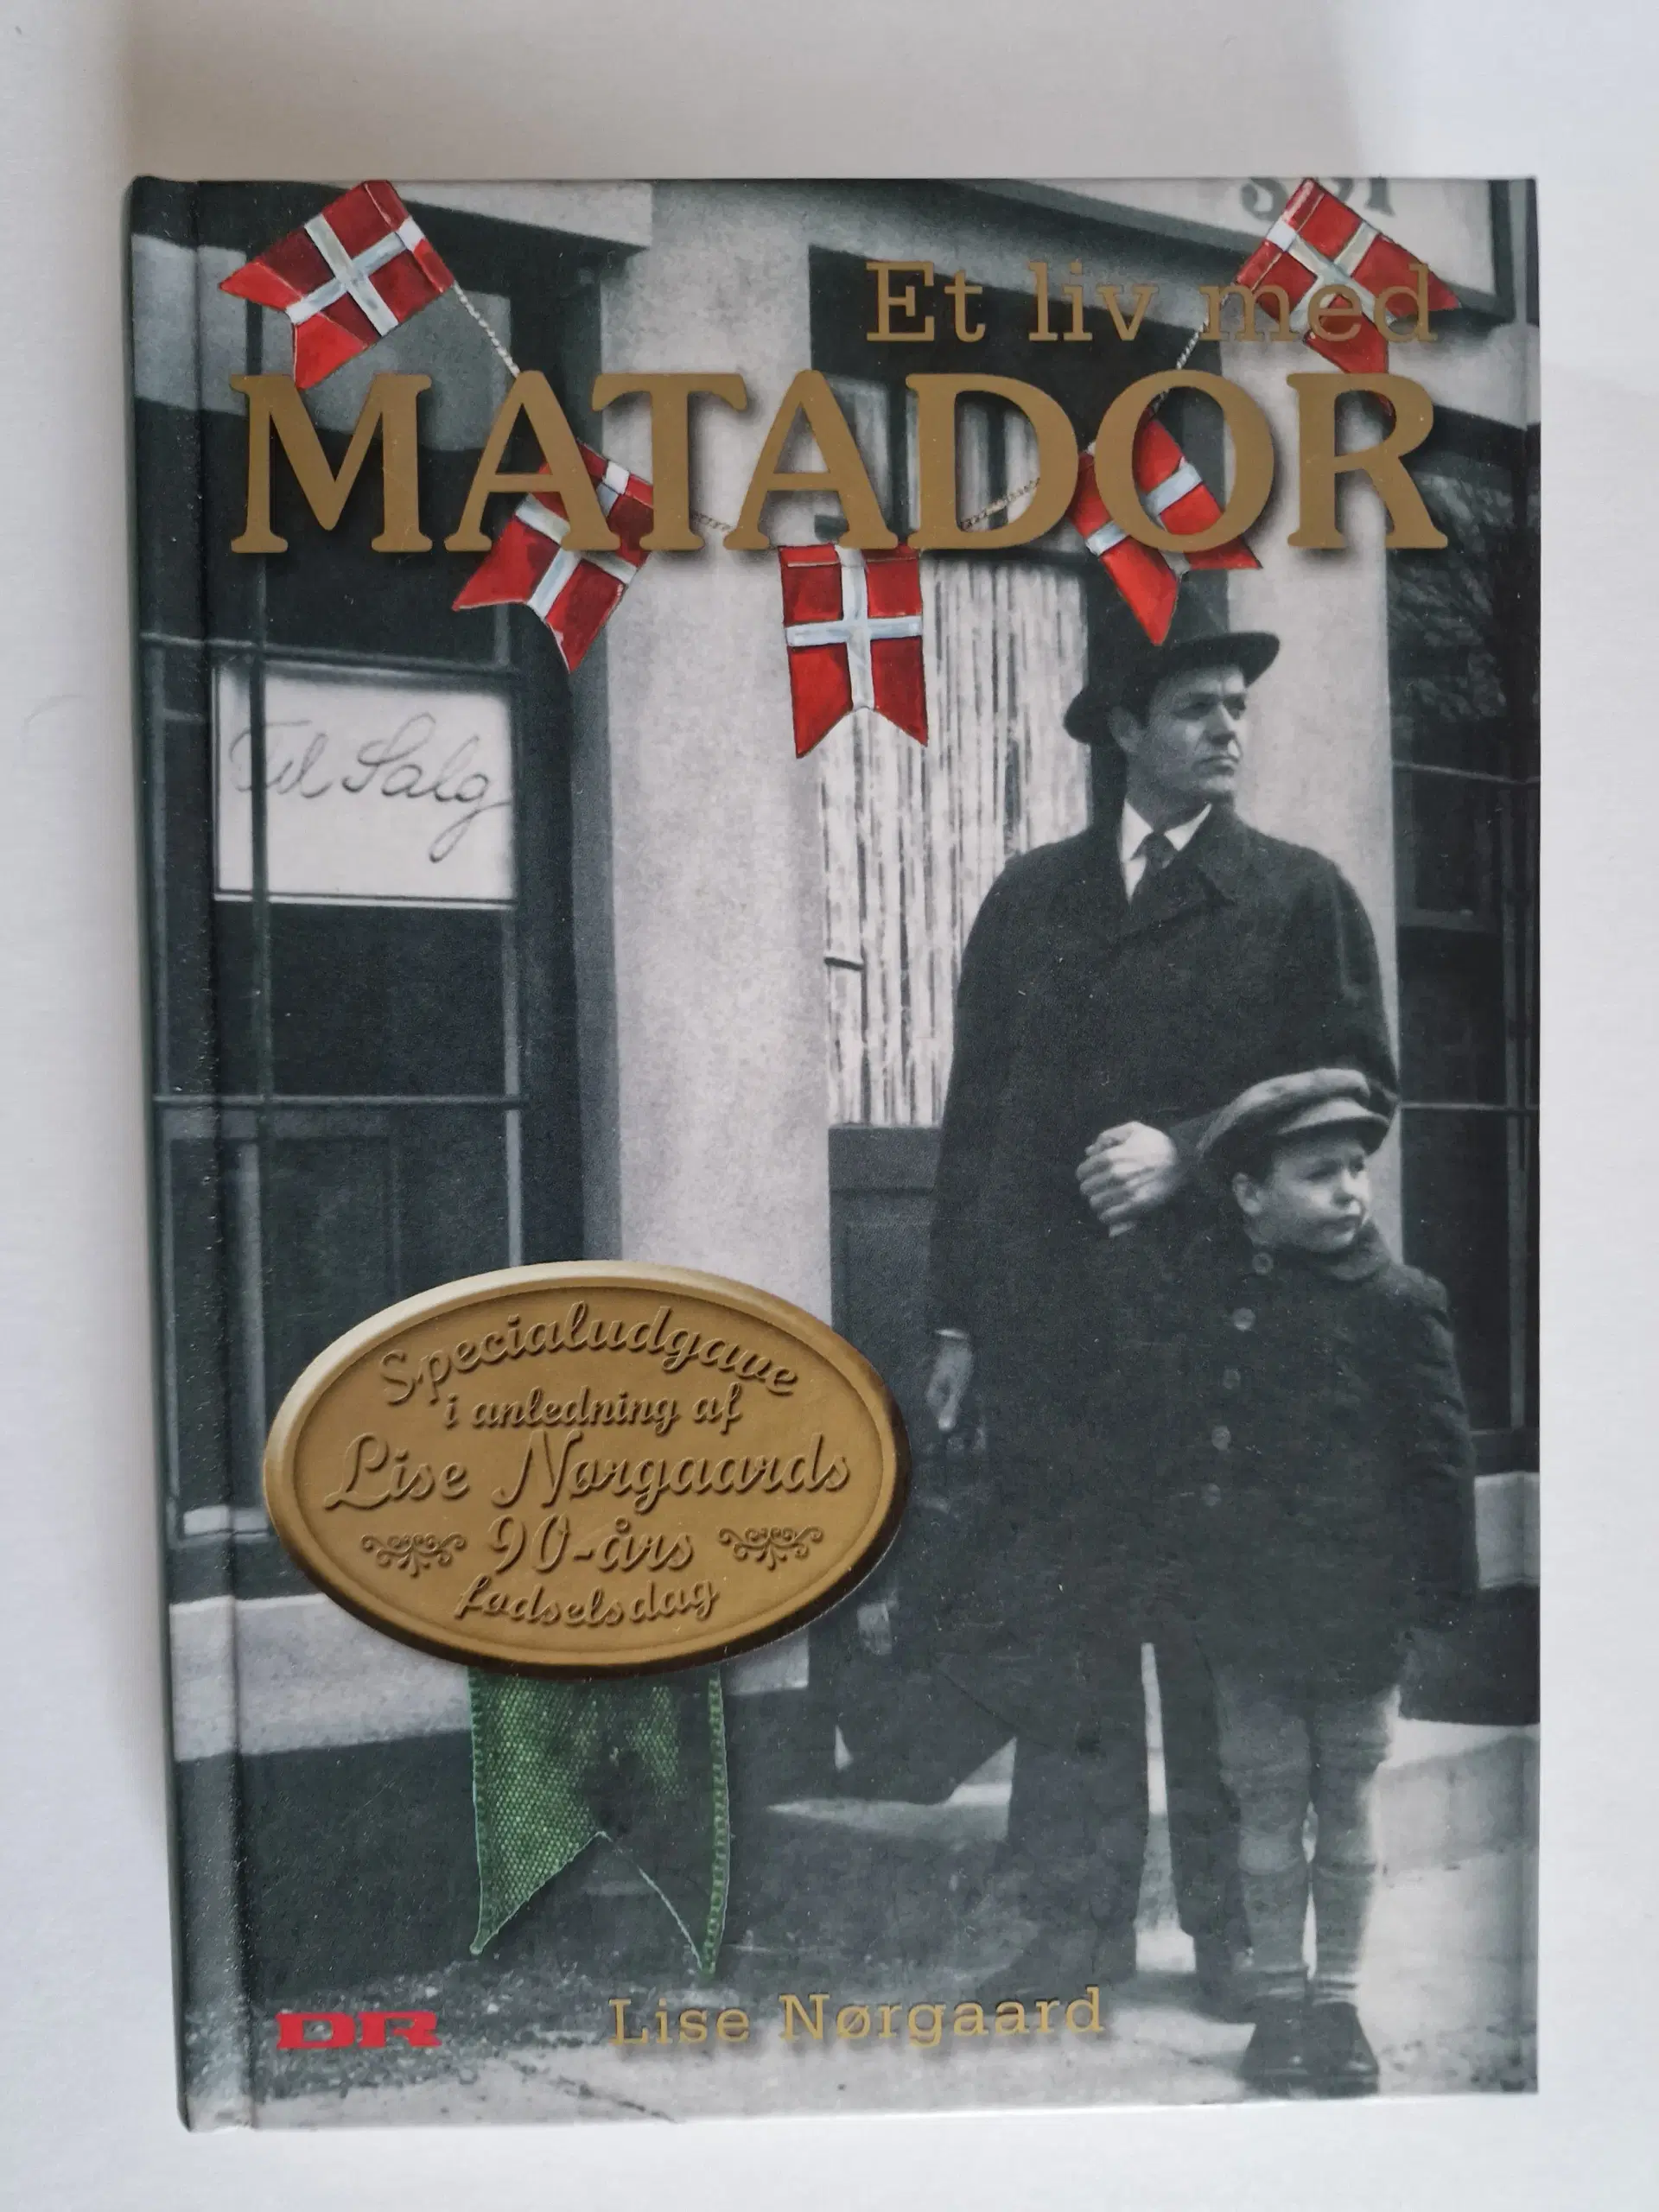 Matador: et liv med Matador